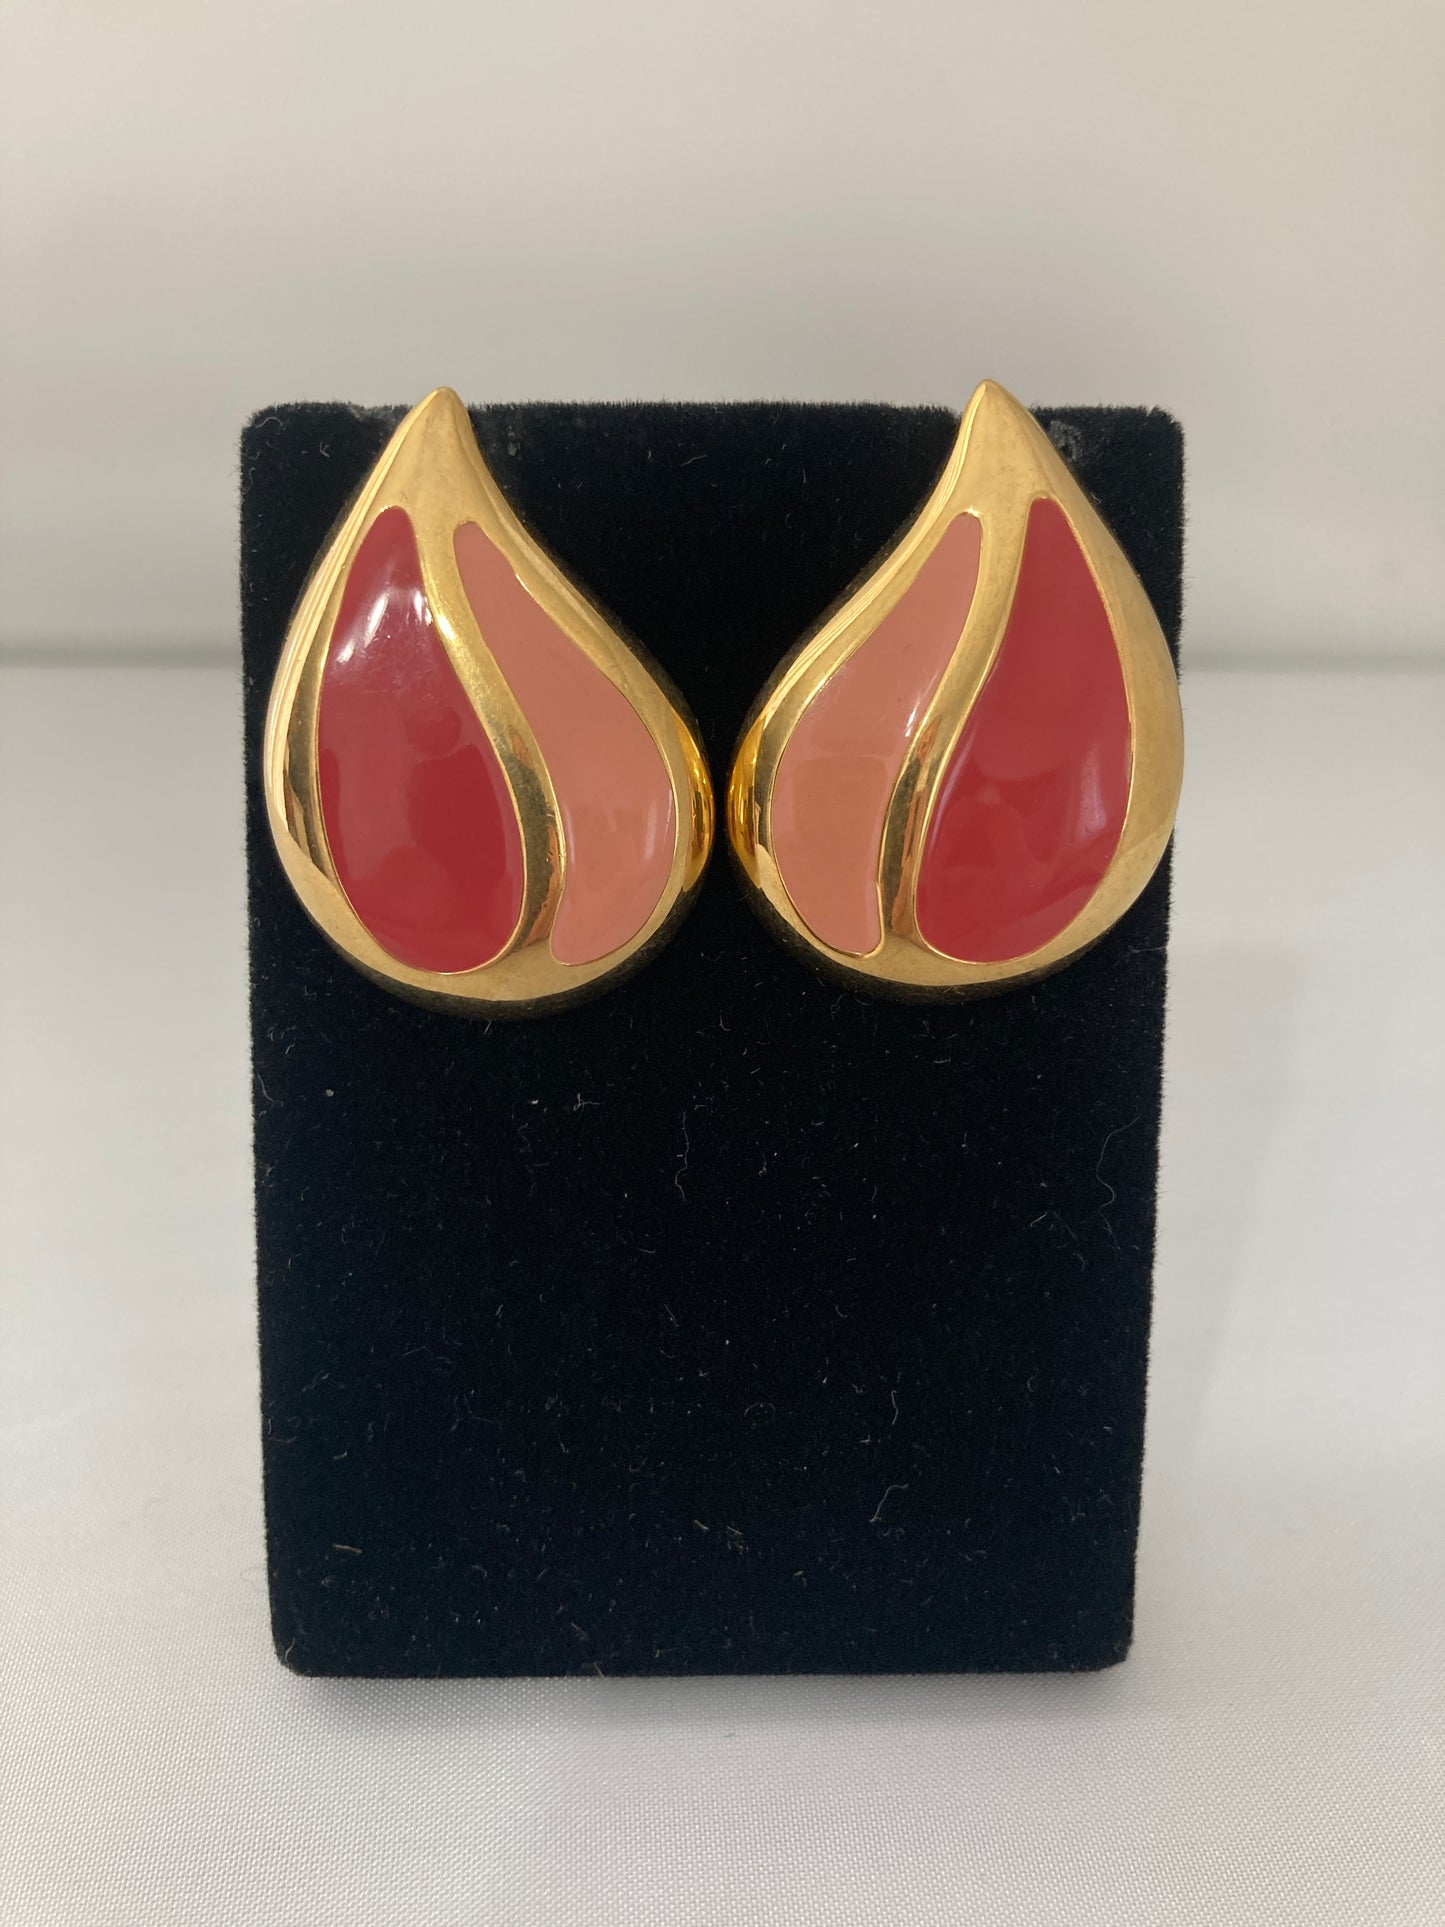 Goldtone Enamel Teardrop Earrings by Napier in Mauve and Peach